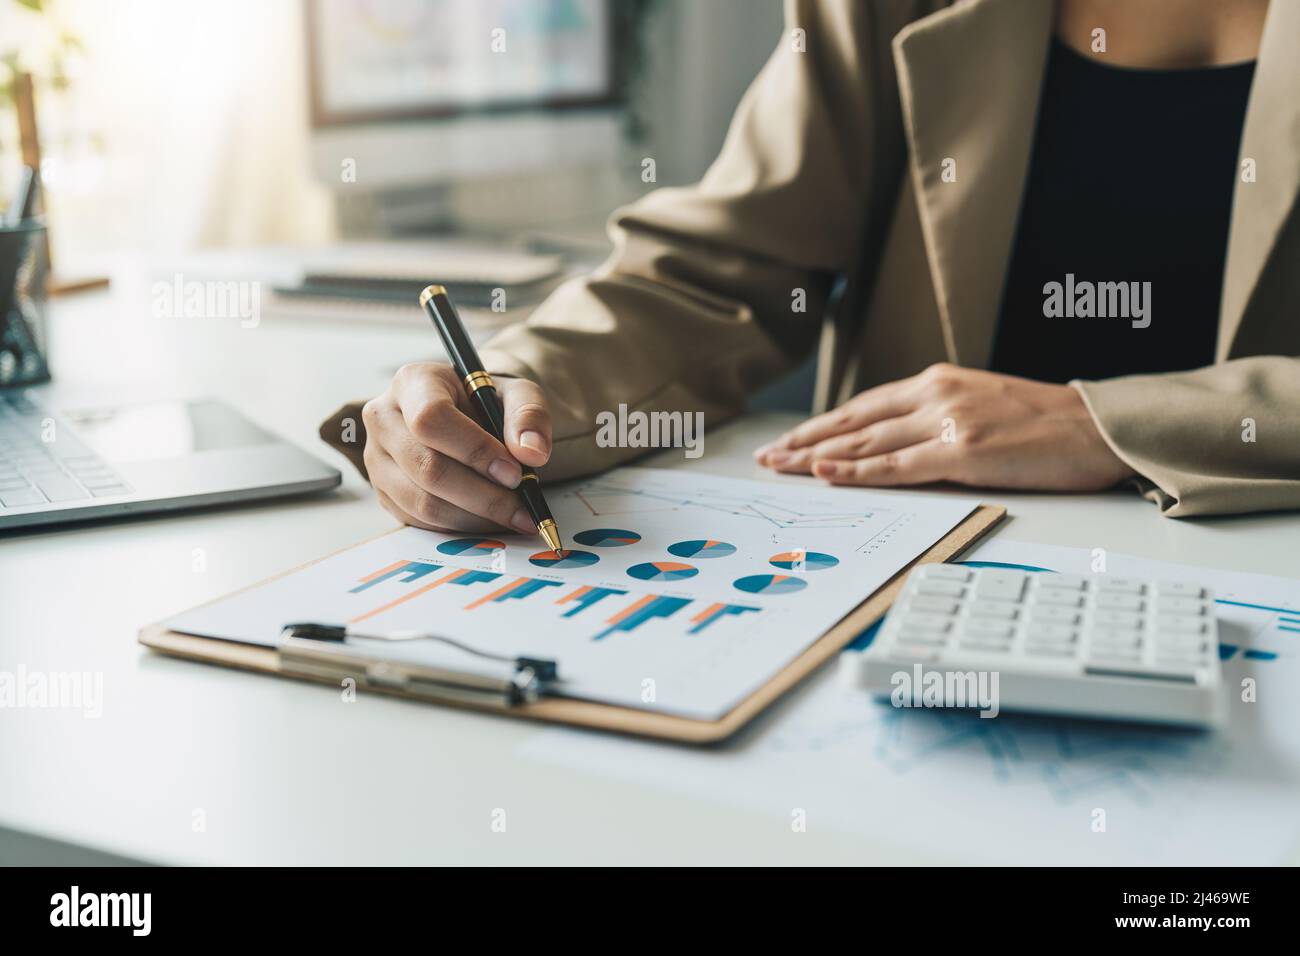 business donna lavoro dati documento grafico grafico rapporto marketing ricerca sviluppo pianificazione strategia di gestione analisi finanziaria contabilità Foto Stock